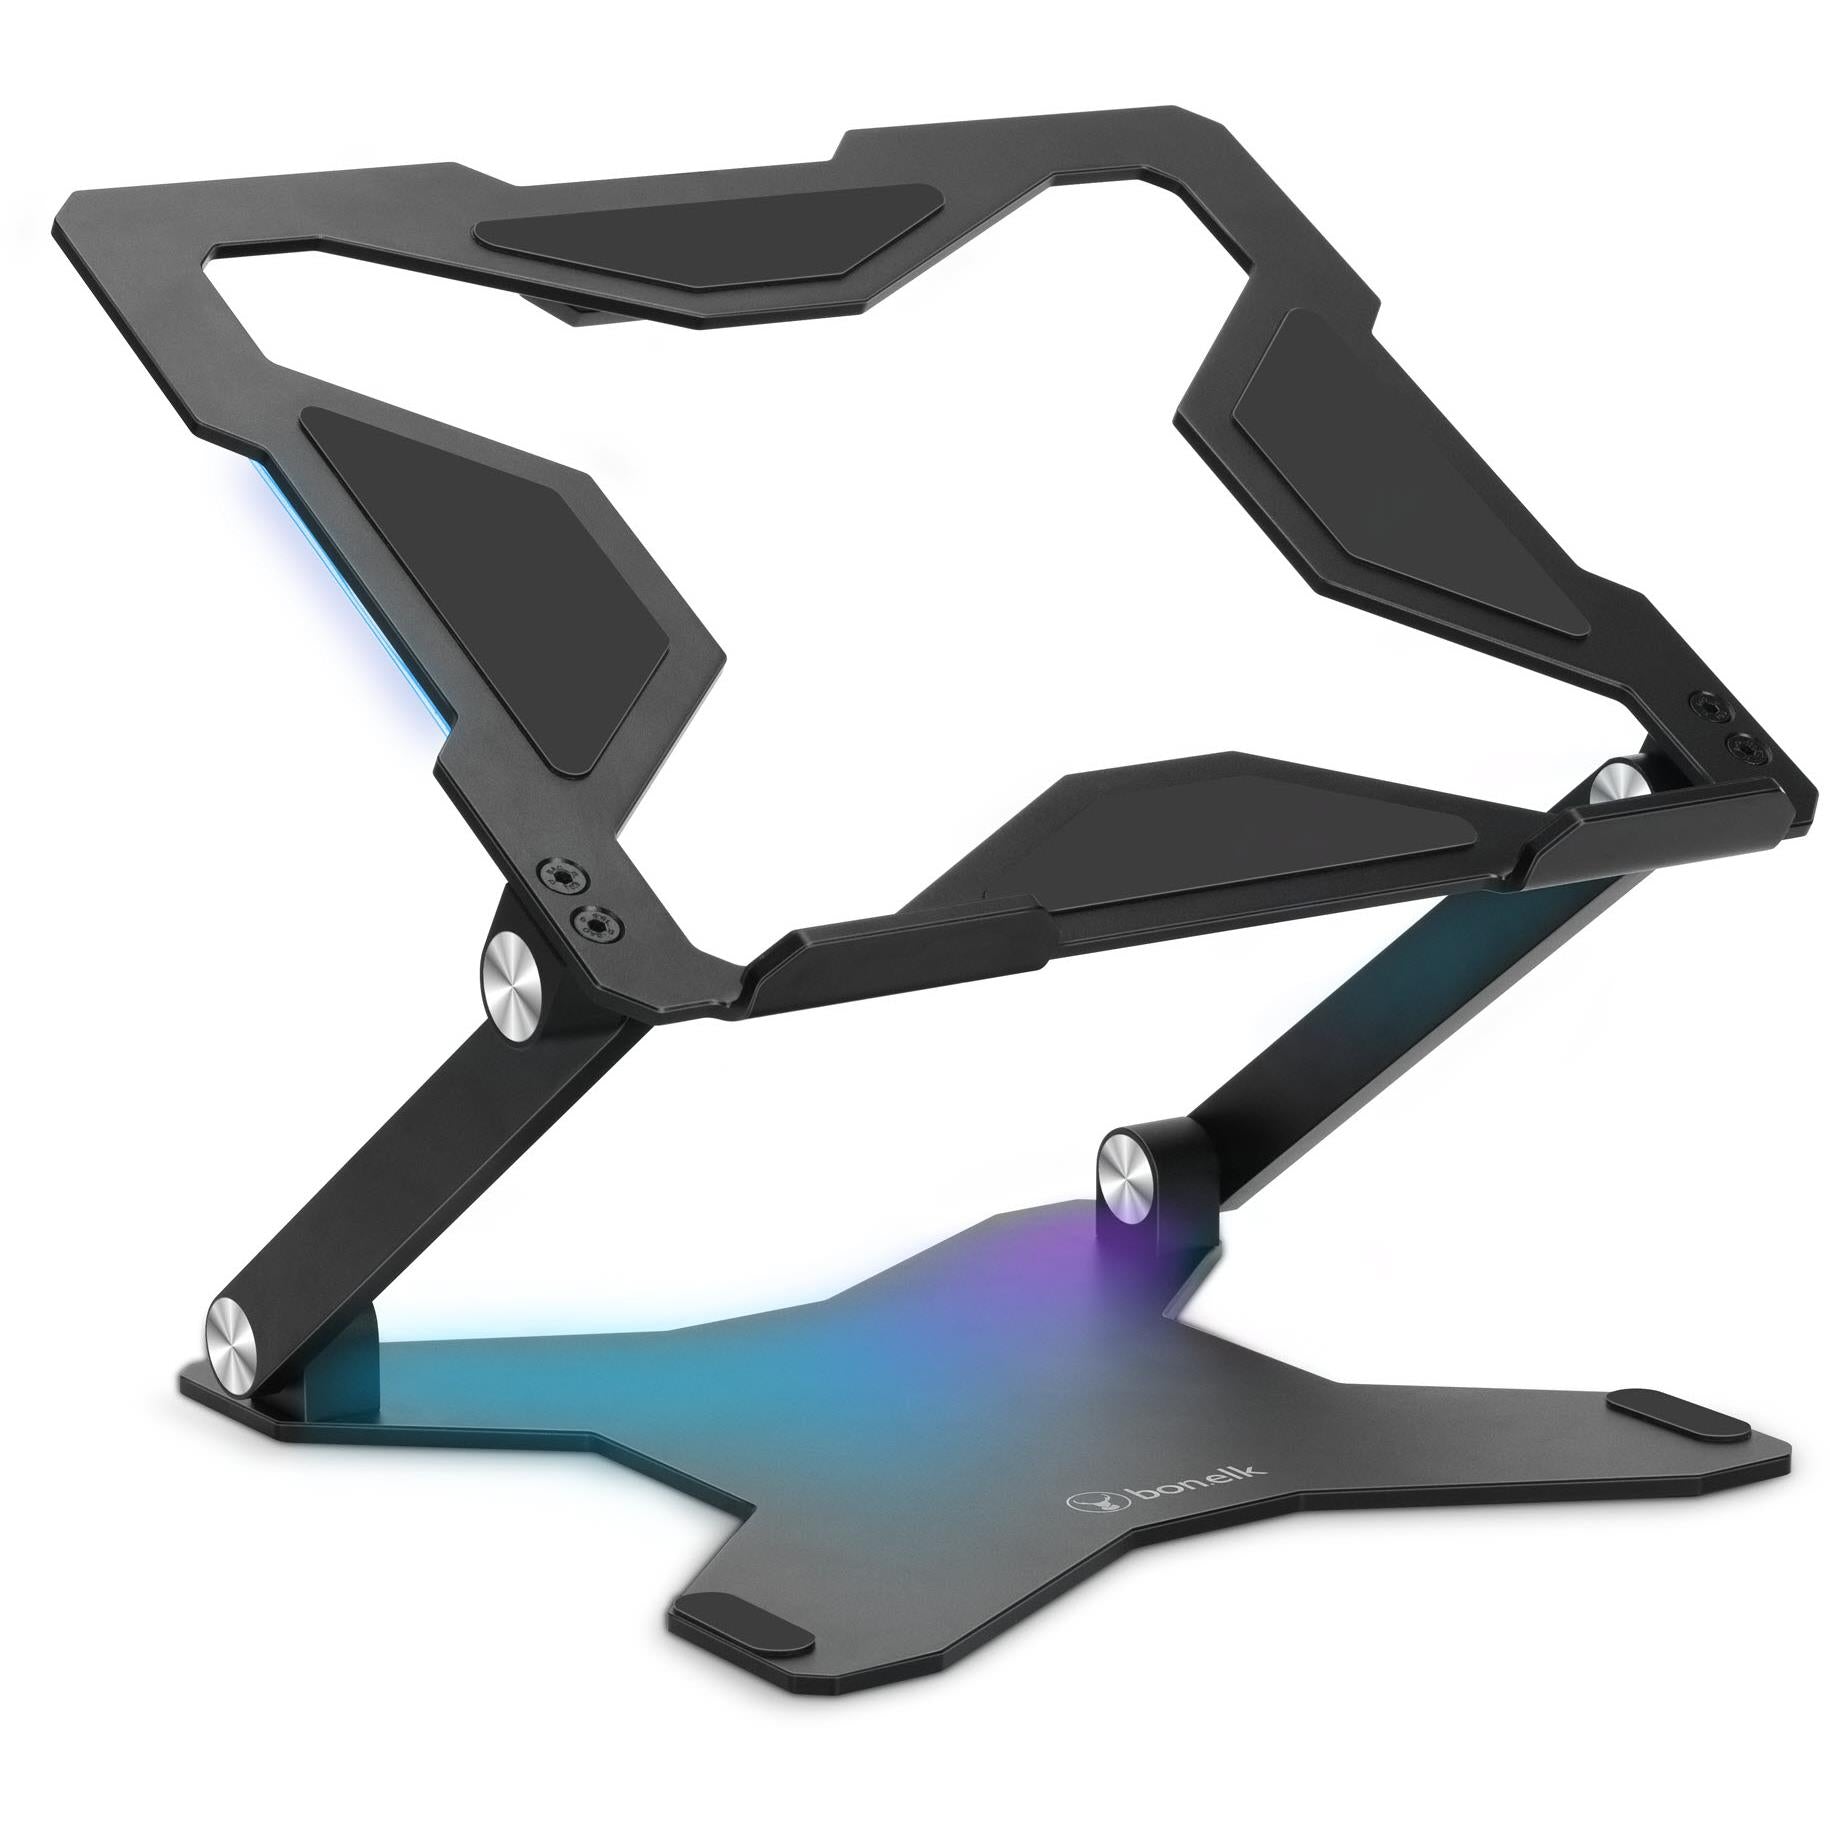 bonelk elevate gamer led laptop stand (black)